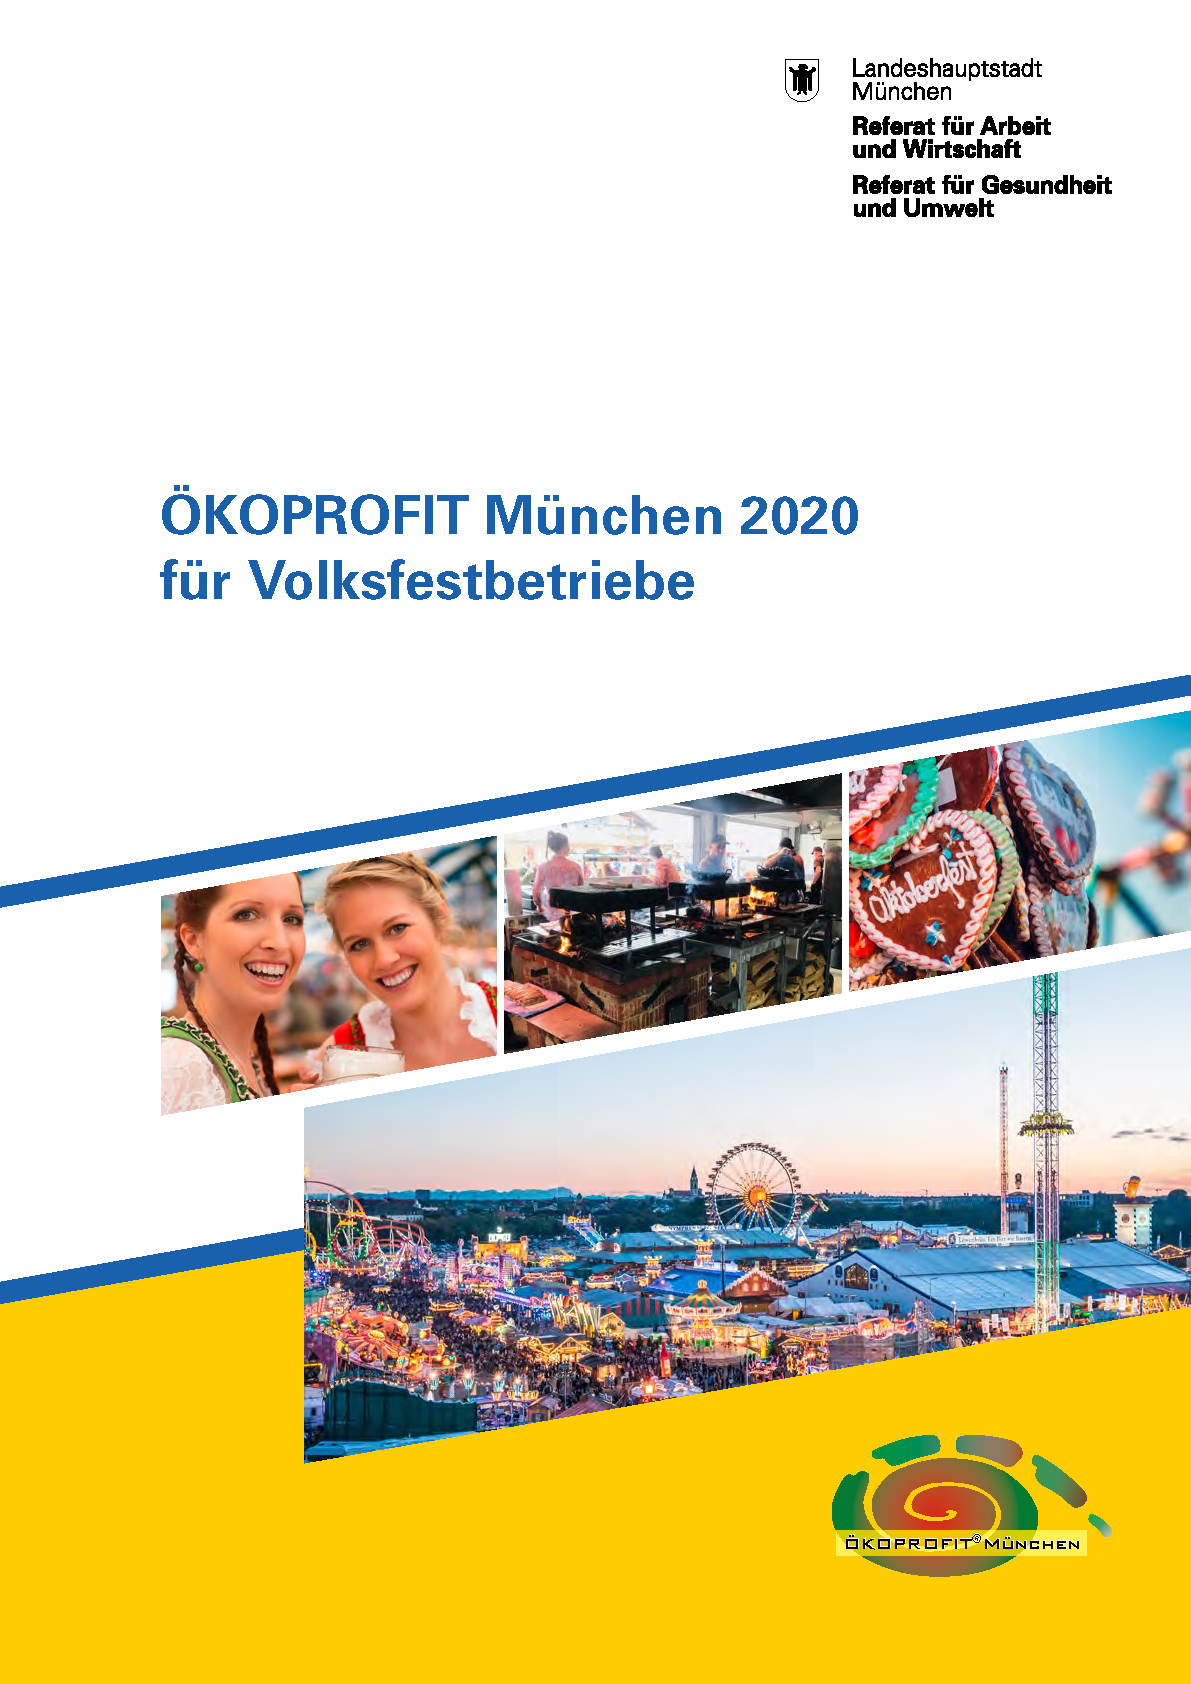 ÖKOPROFIT für Volksfestbetriebe 2020 – Landeshauptstadt München